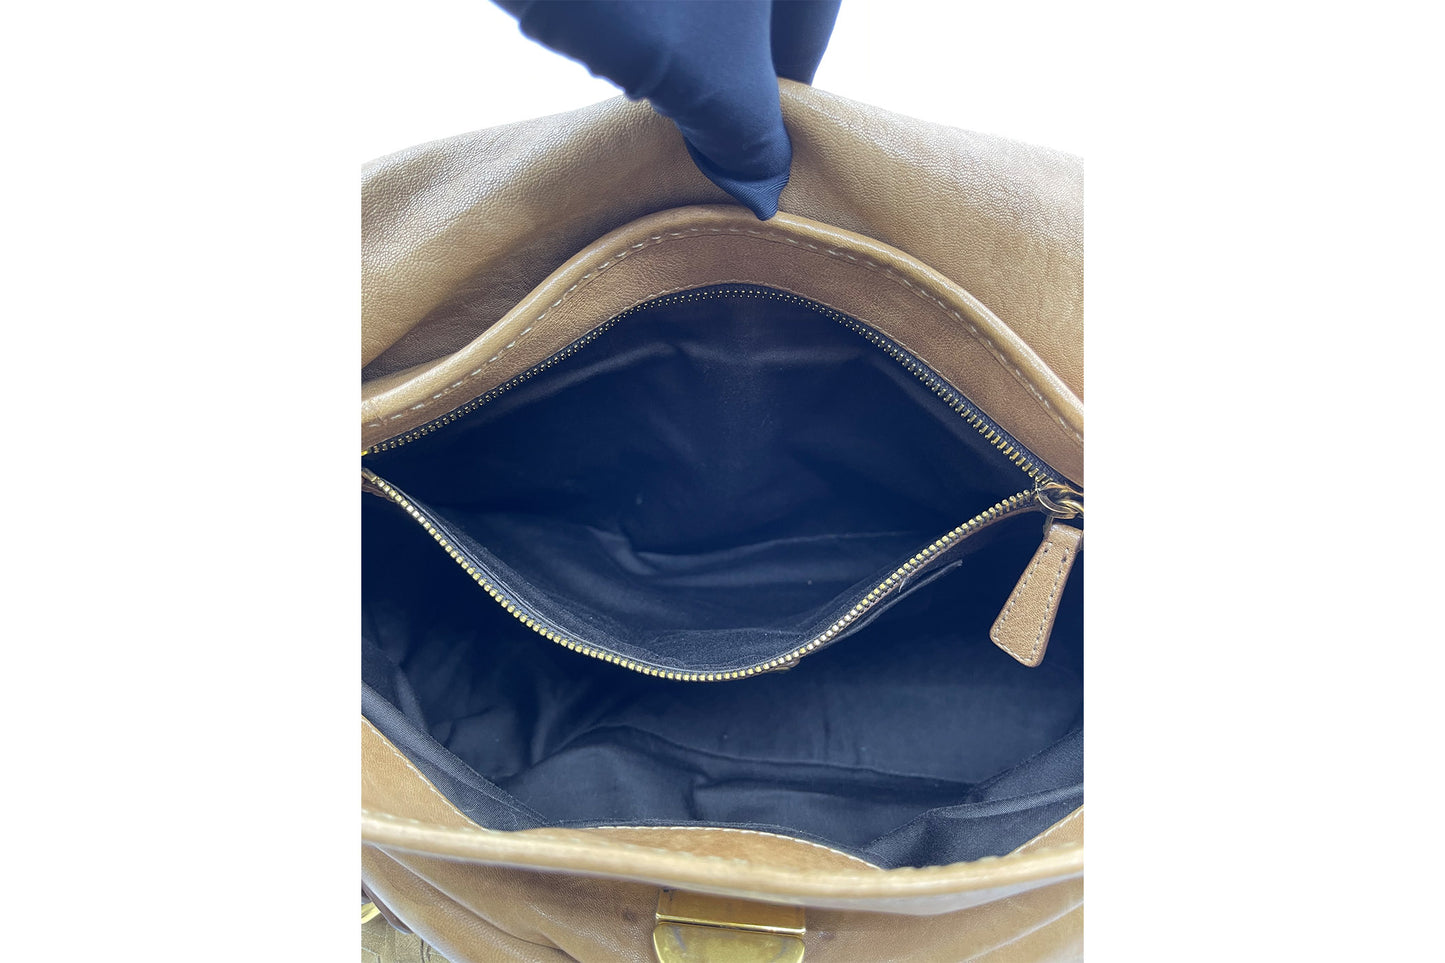 Miu Miu Brown Pleated Bag